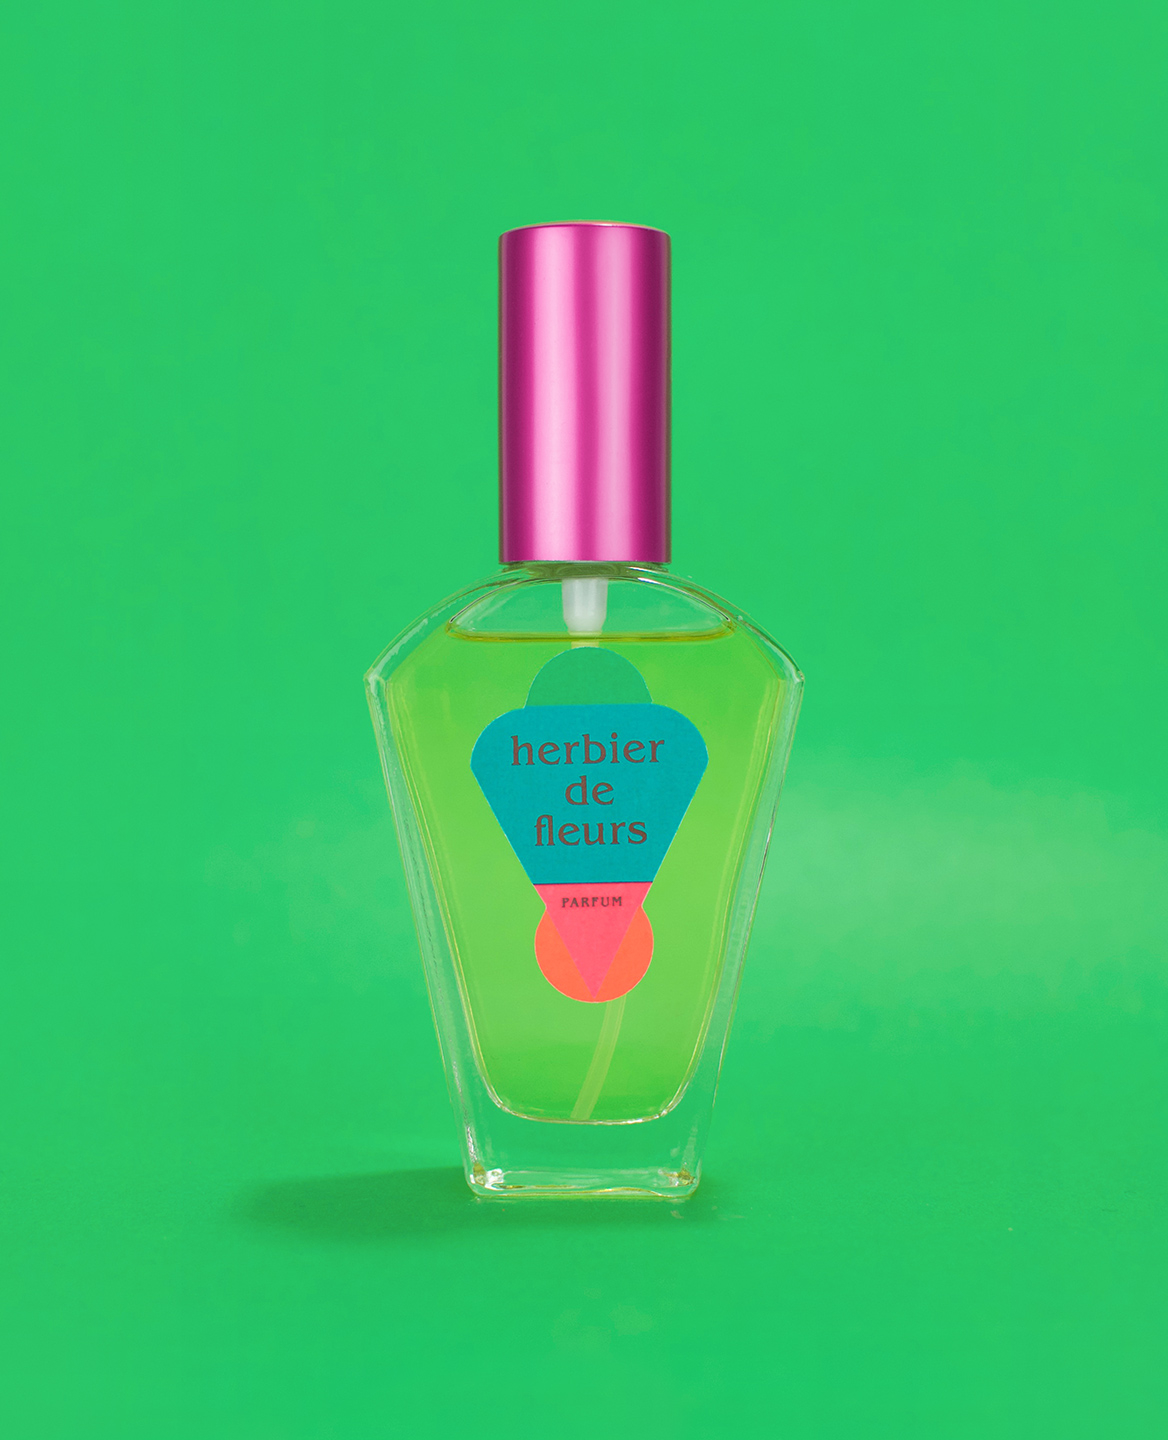 Bottle of the perfume Herbier de Fleurs by Fanette Mellier